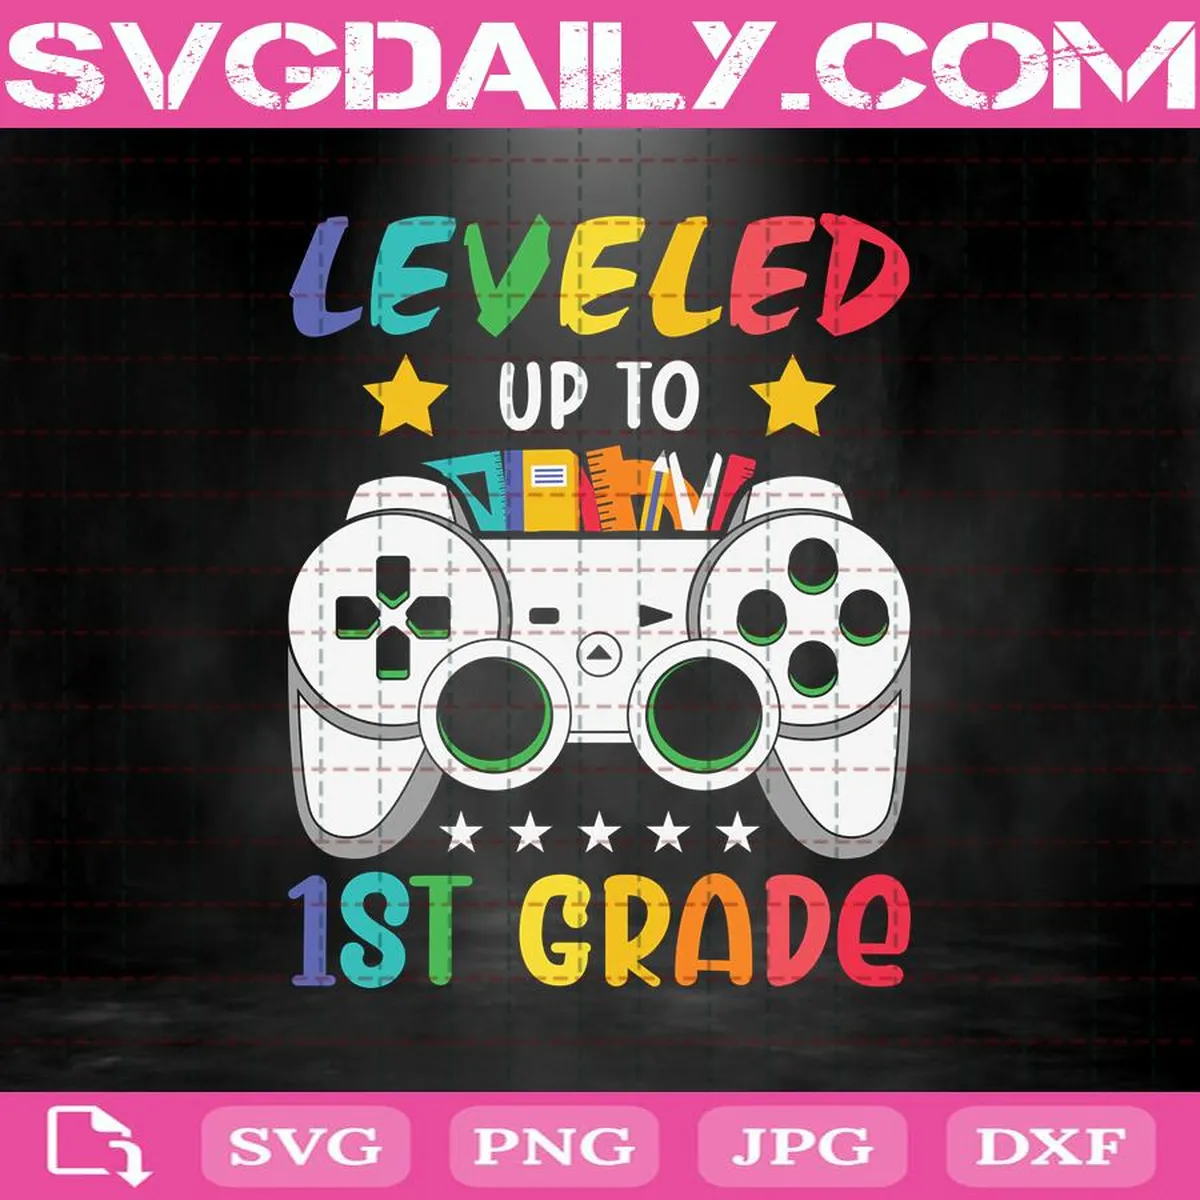 Leveled Up To 1st Grade Svg, 1st Grade Svg, 1st Grade Level Unlocked Svg, Video Game Svg, Level Svg, Game Svg, Back To School Svg